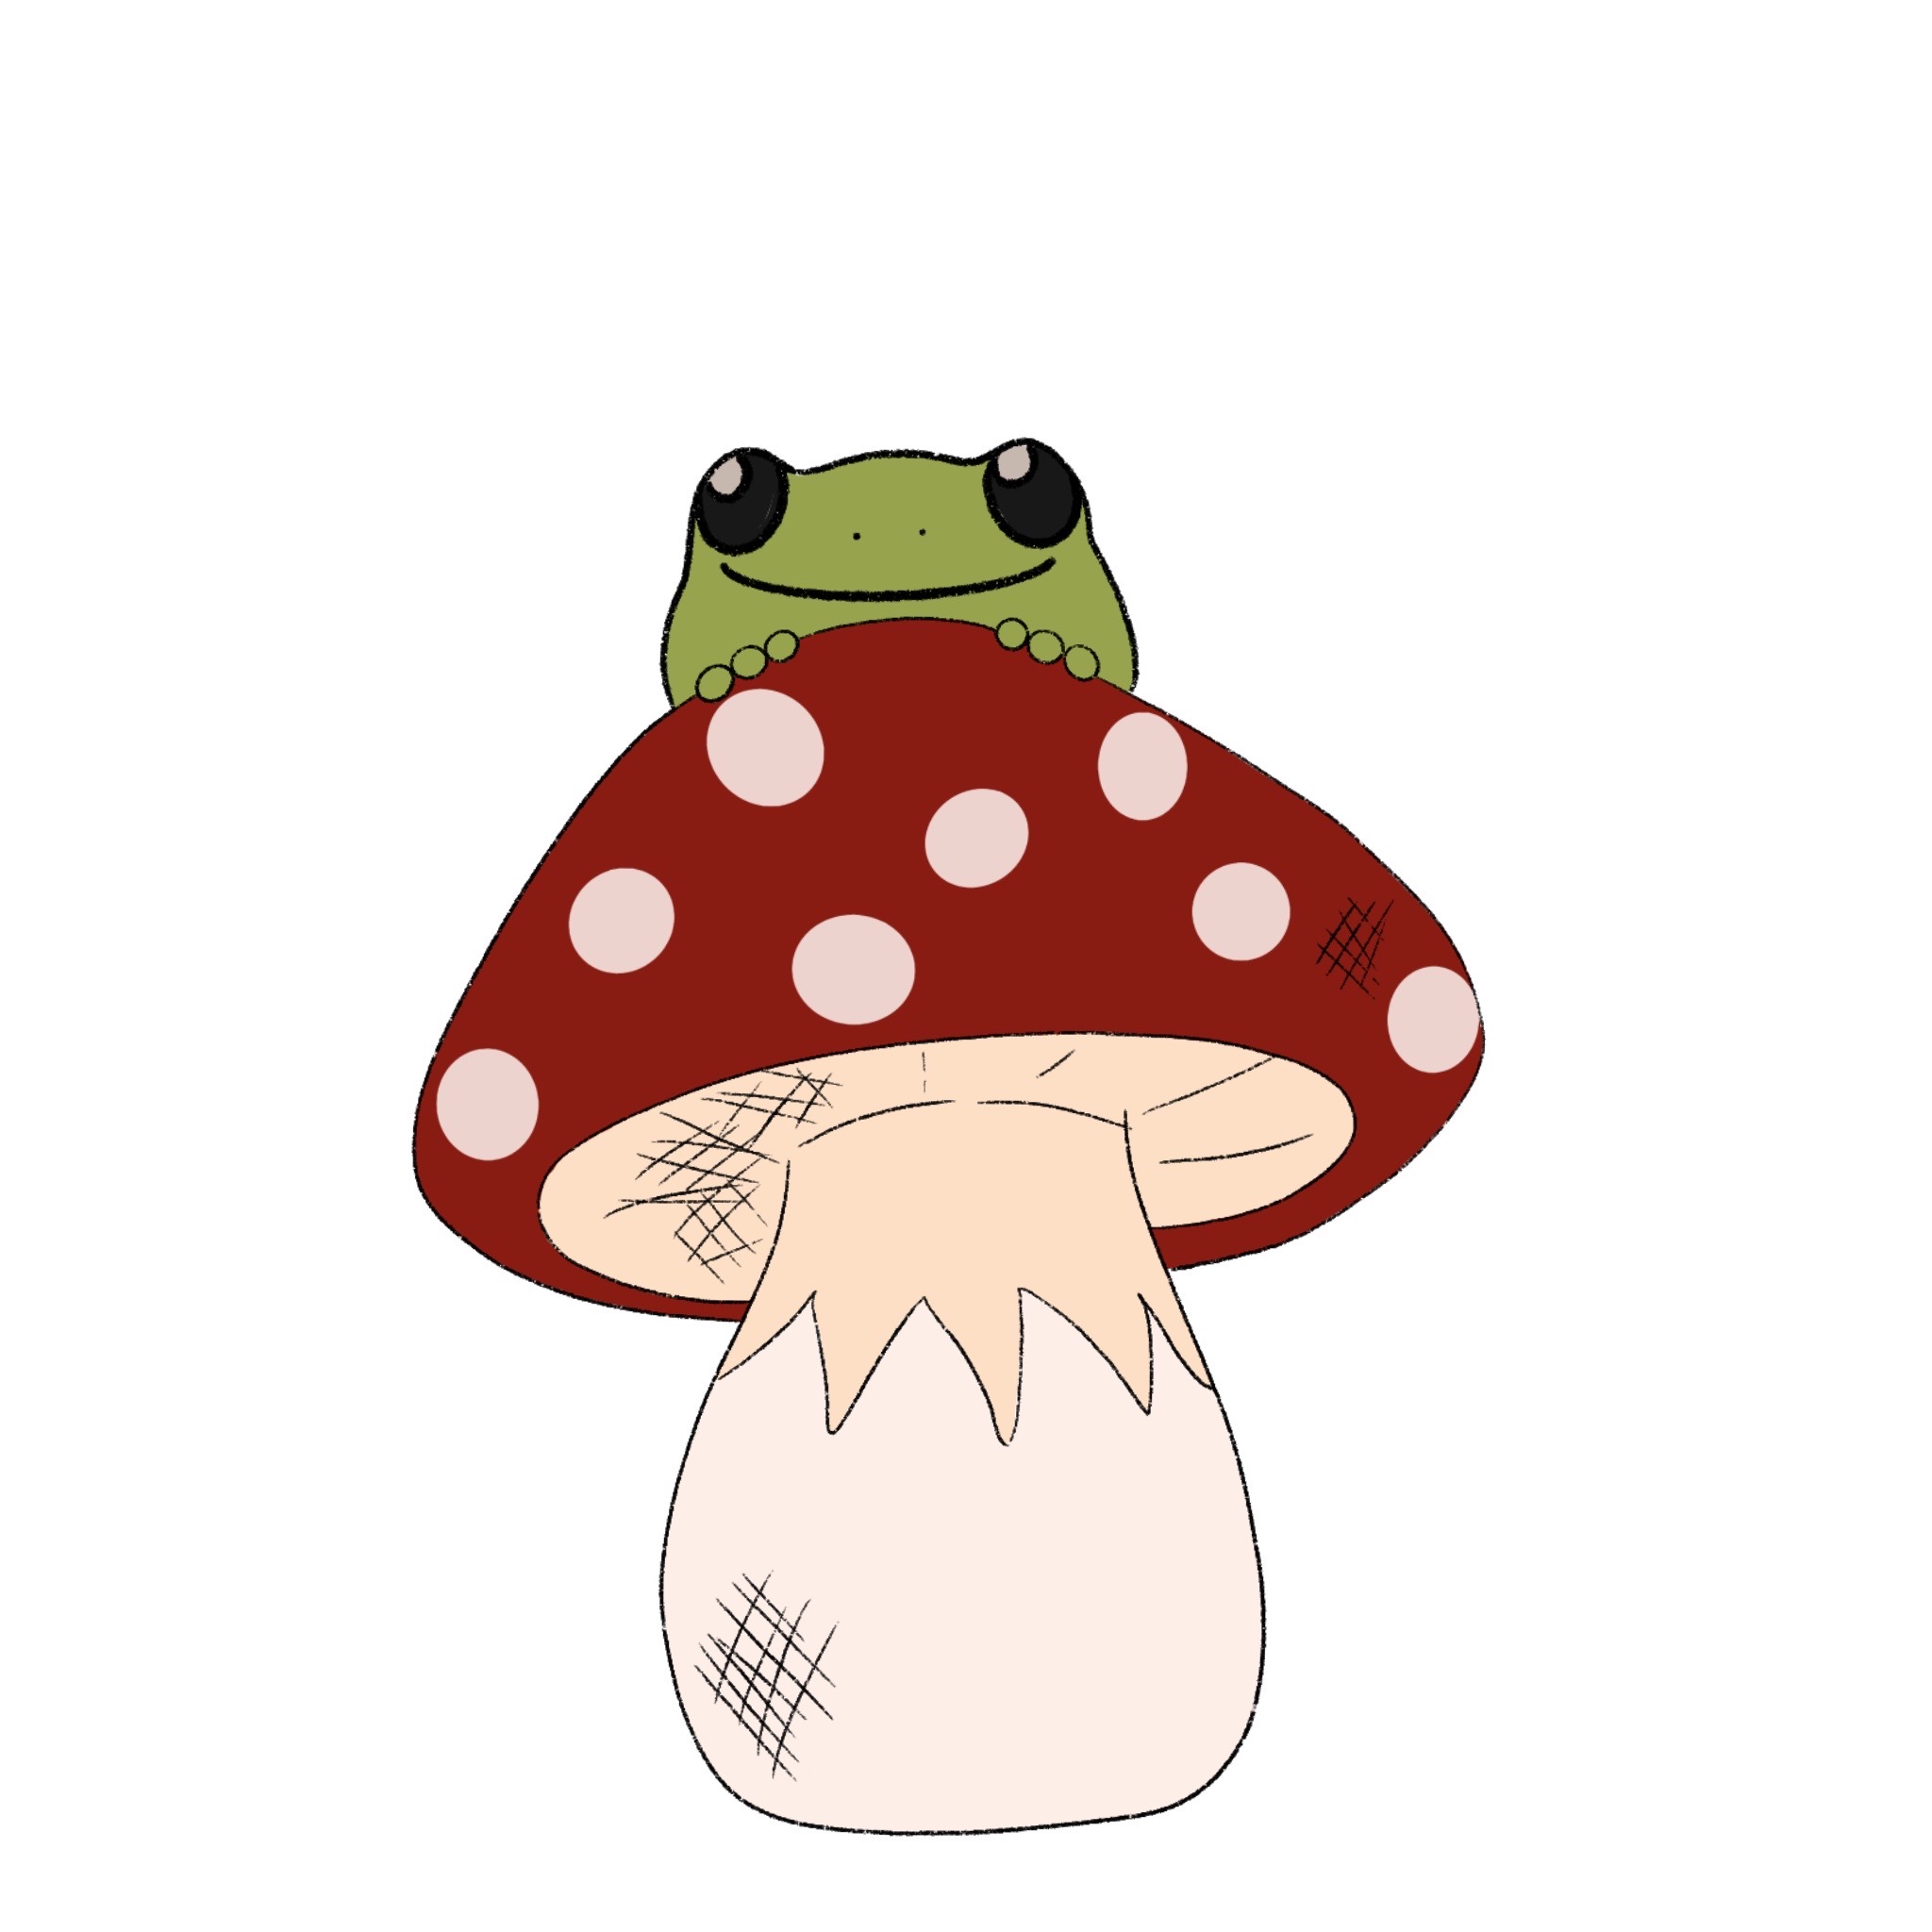 Mushroom frog by iv0ryyy on DeviantArt